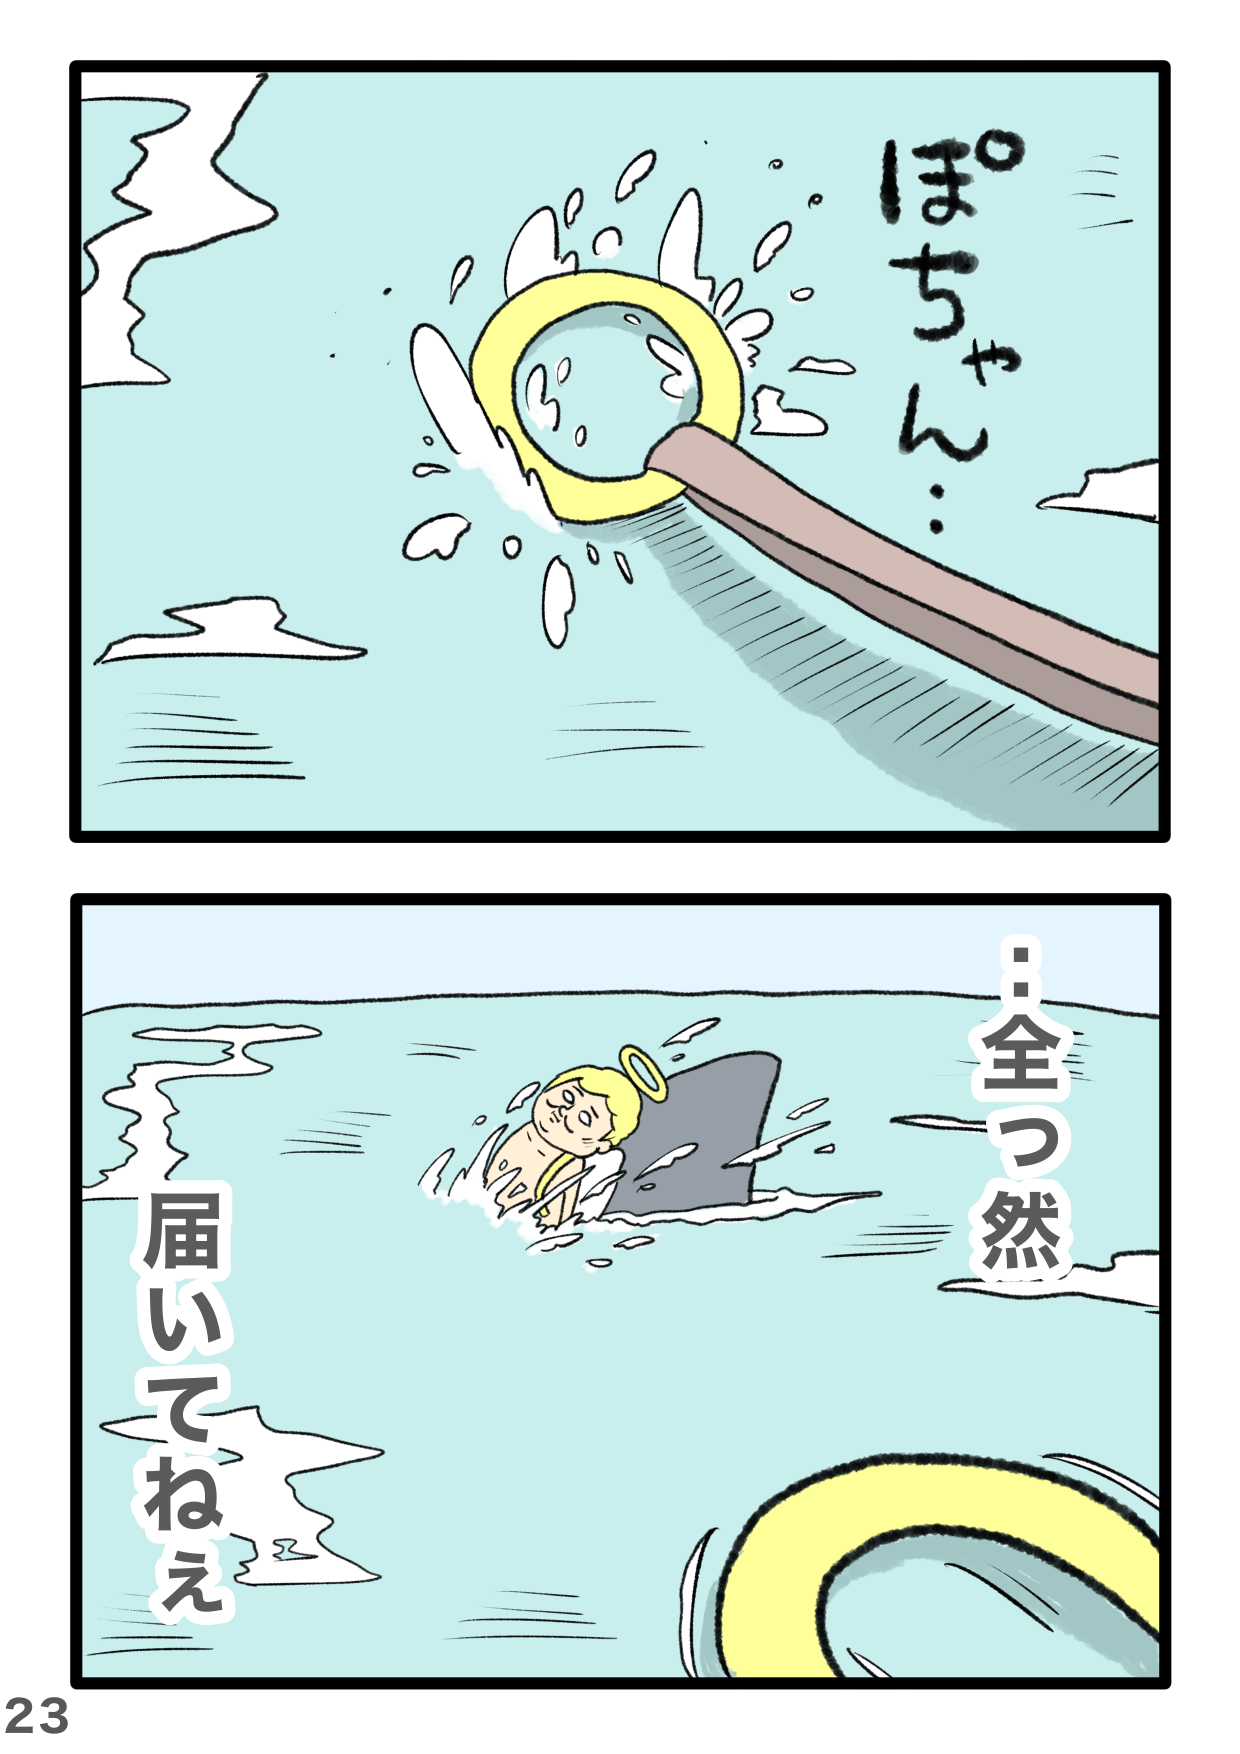 天使が海で...溺れてる⁉ ぶっ飛び展開が大人気の「ギャグ漫画」に予想外の新展開が 3-23.PNG